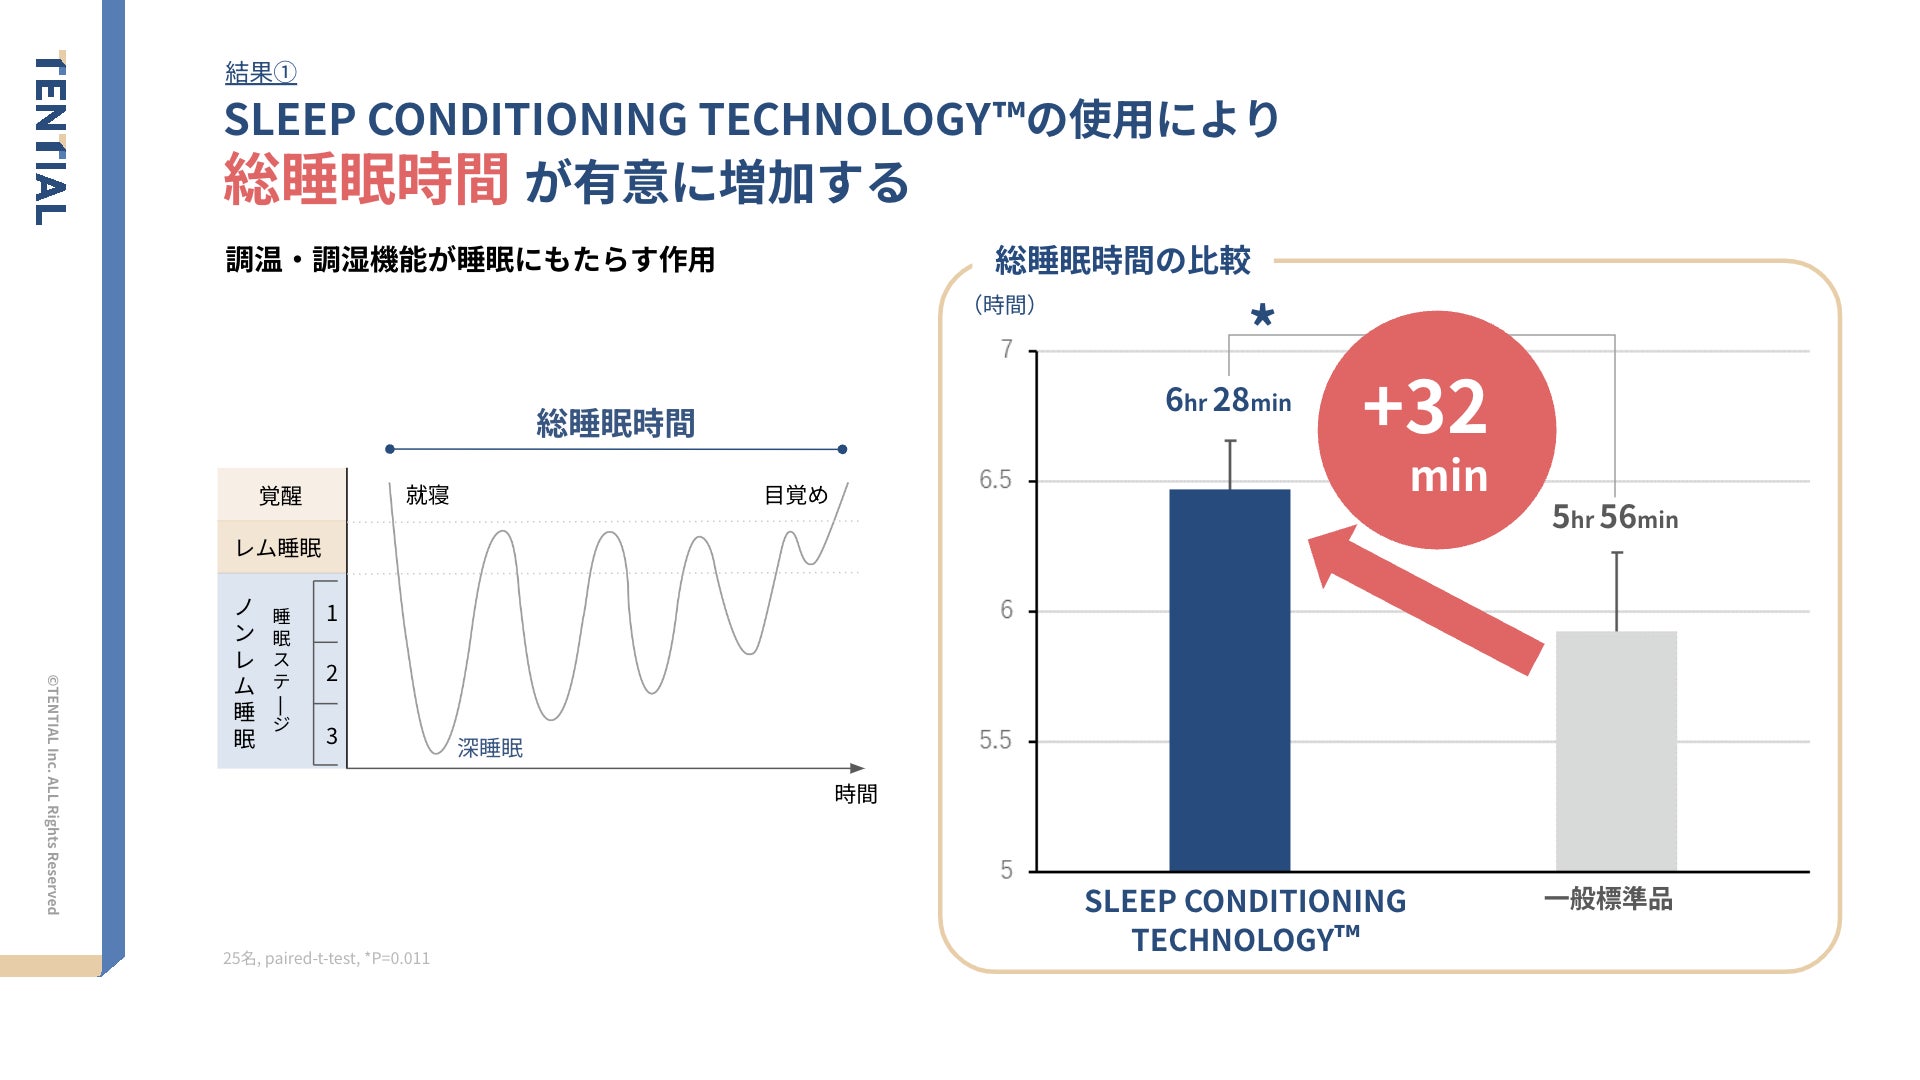 愛知県瀬戸市にある大橋運輸株式会社と「SELFLAME®️が運輸業の睡眠課題を解決する臨床研究」を実施。睡眠関連指標が改善する傾向に。